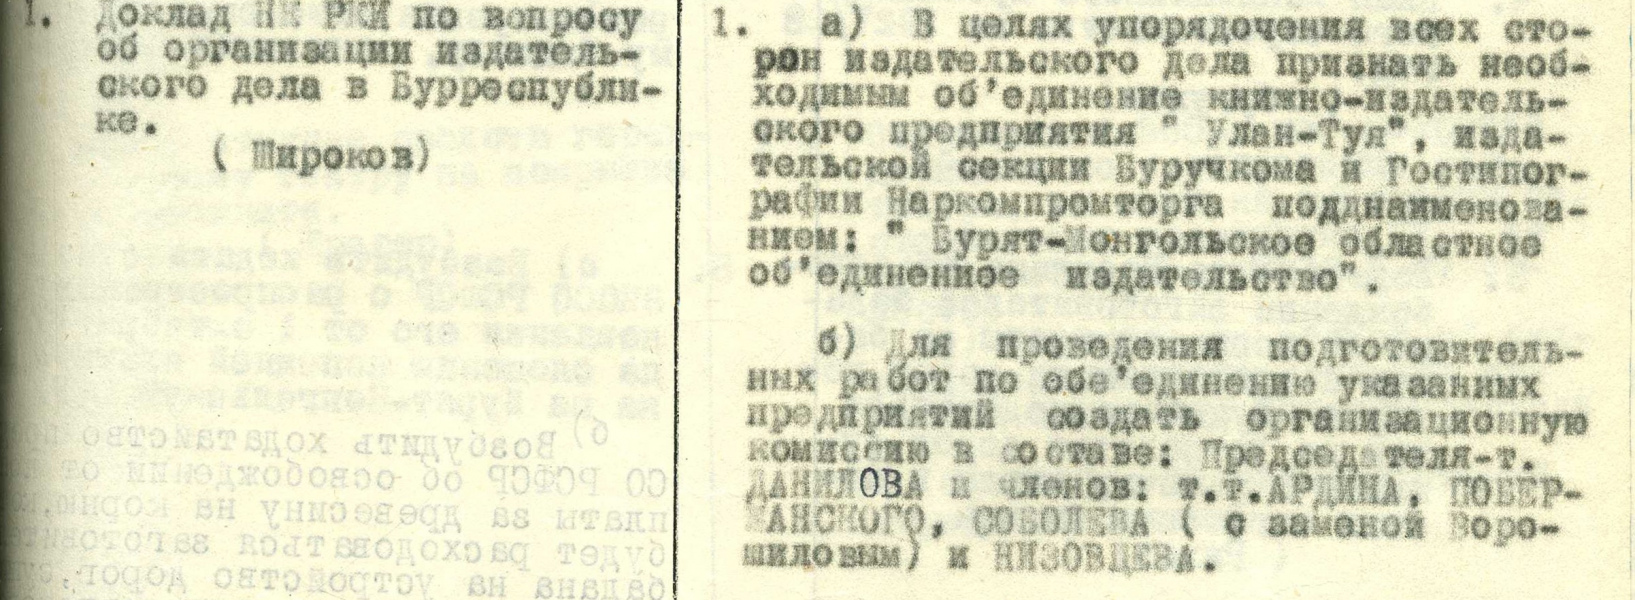 6 марта 1928 г. 95 лет со дня организации Бурят-Монгольского государственного издательства